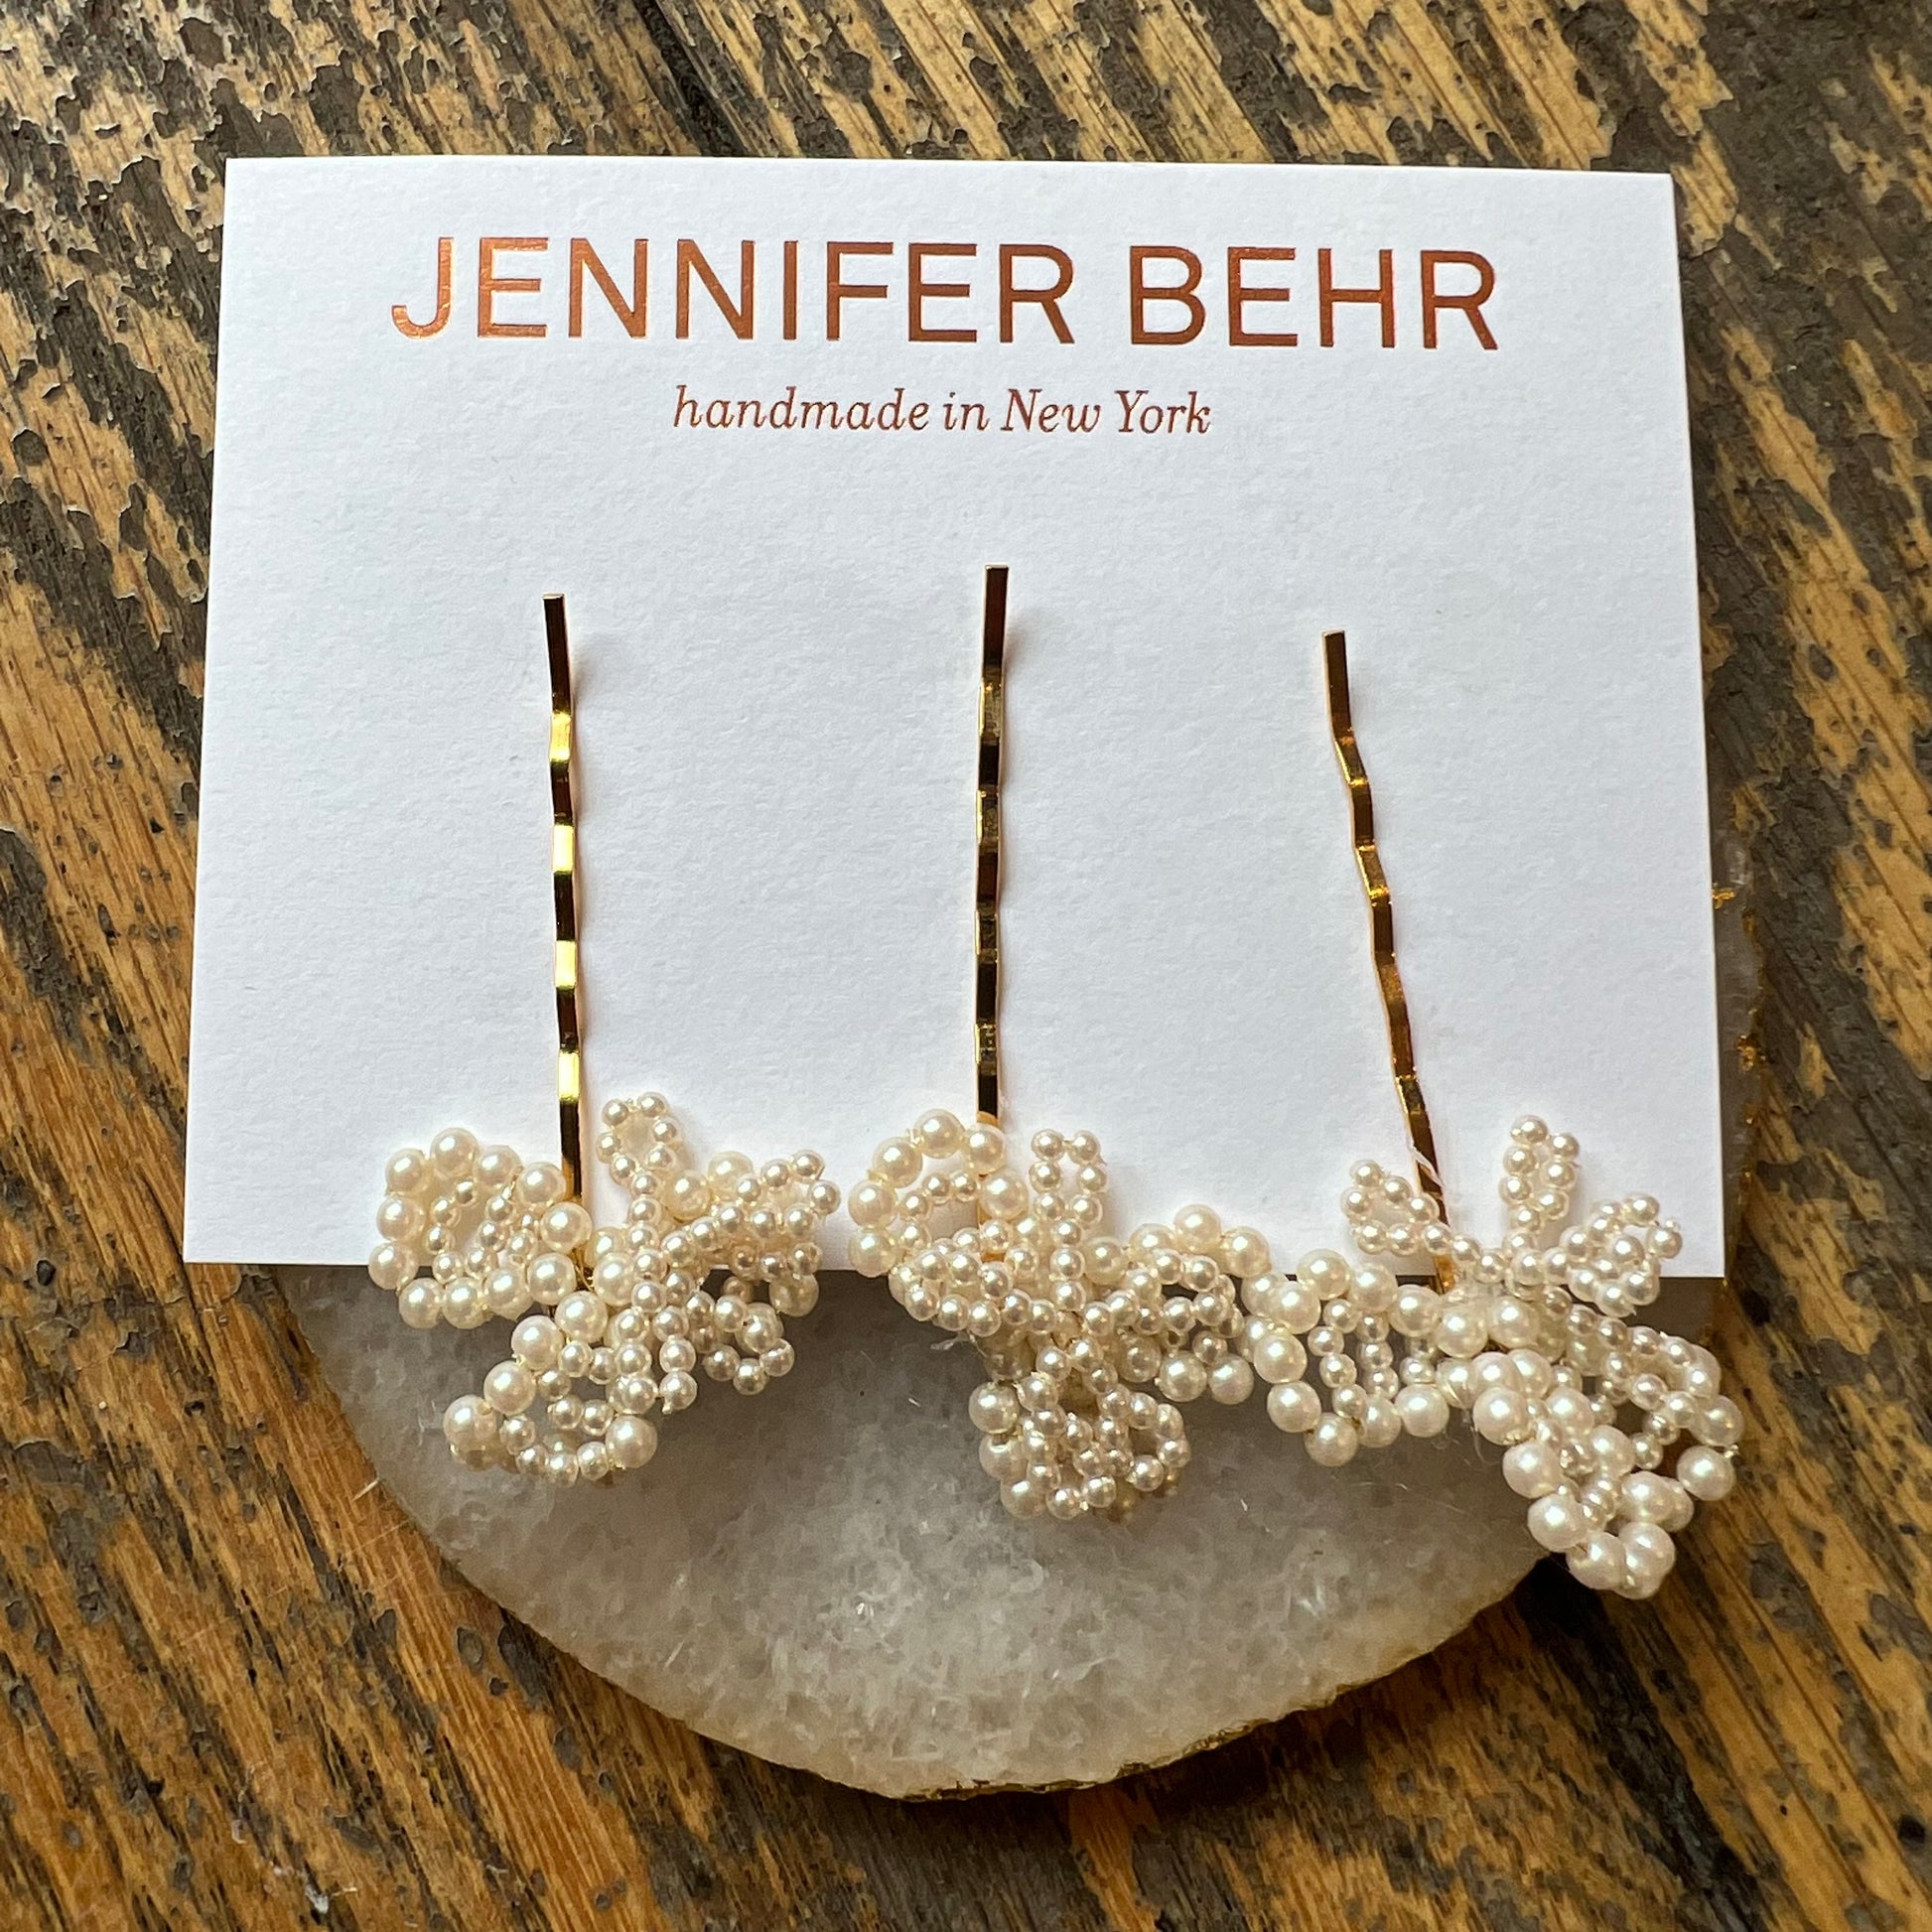 Pin on Jennifer